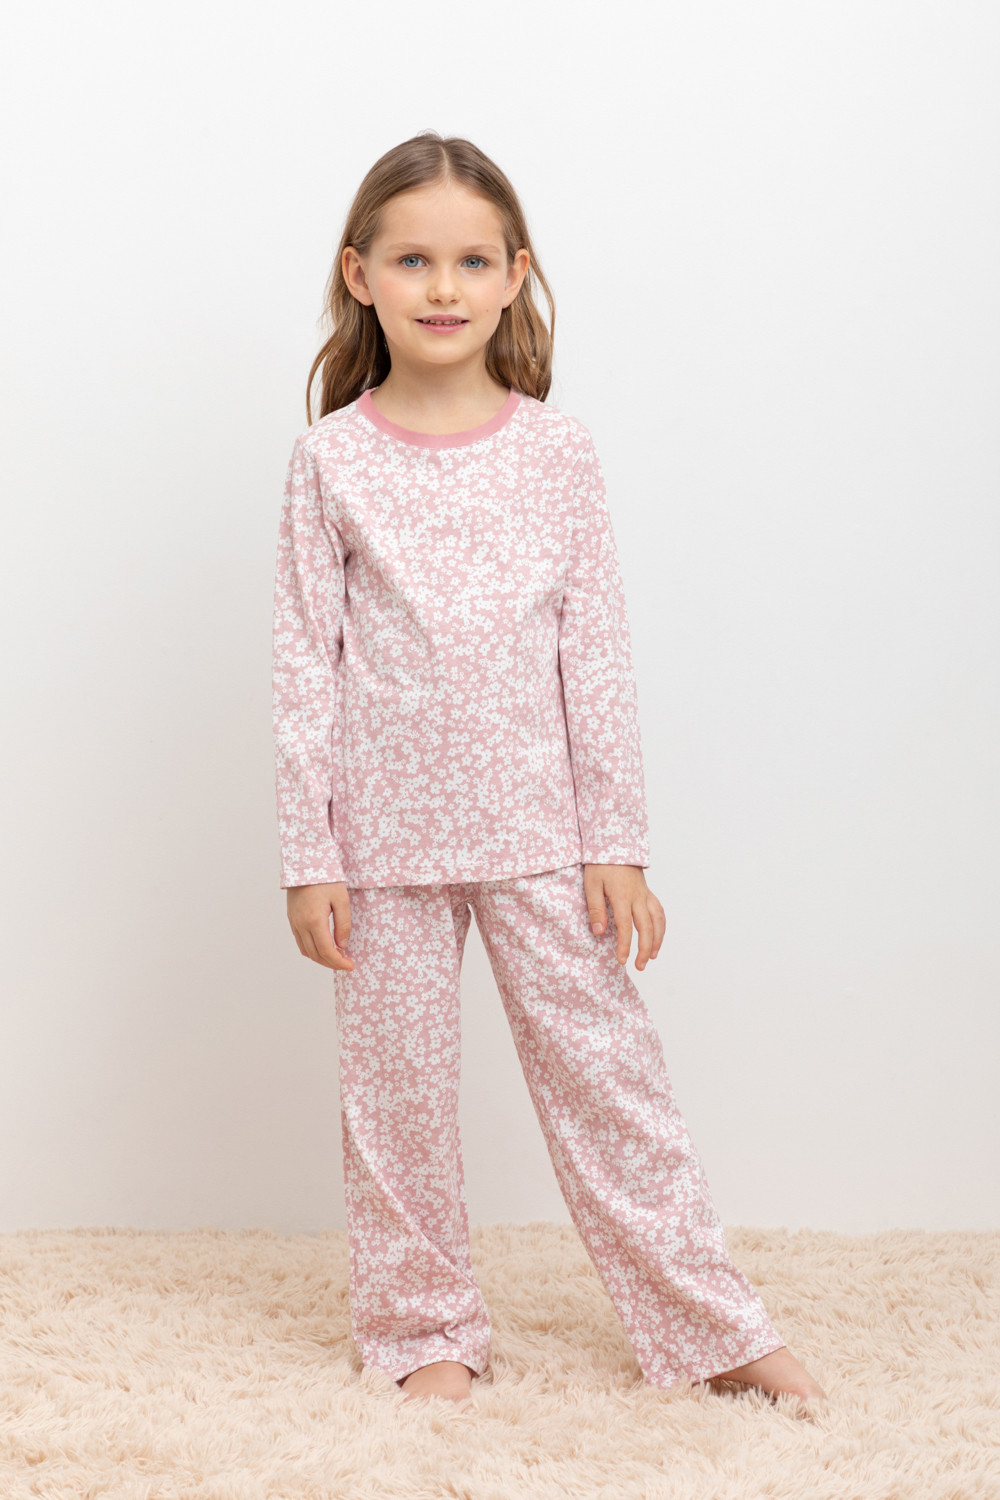 Пижама детская CROCKID МК 1512, М 3055-5, бледно-лиловый, цветочки, 98